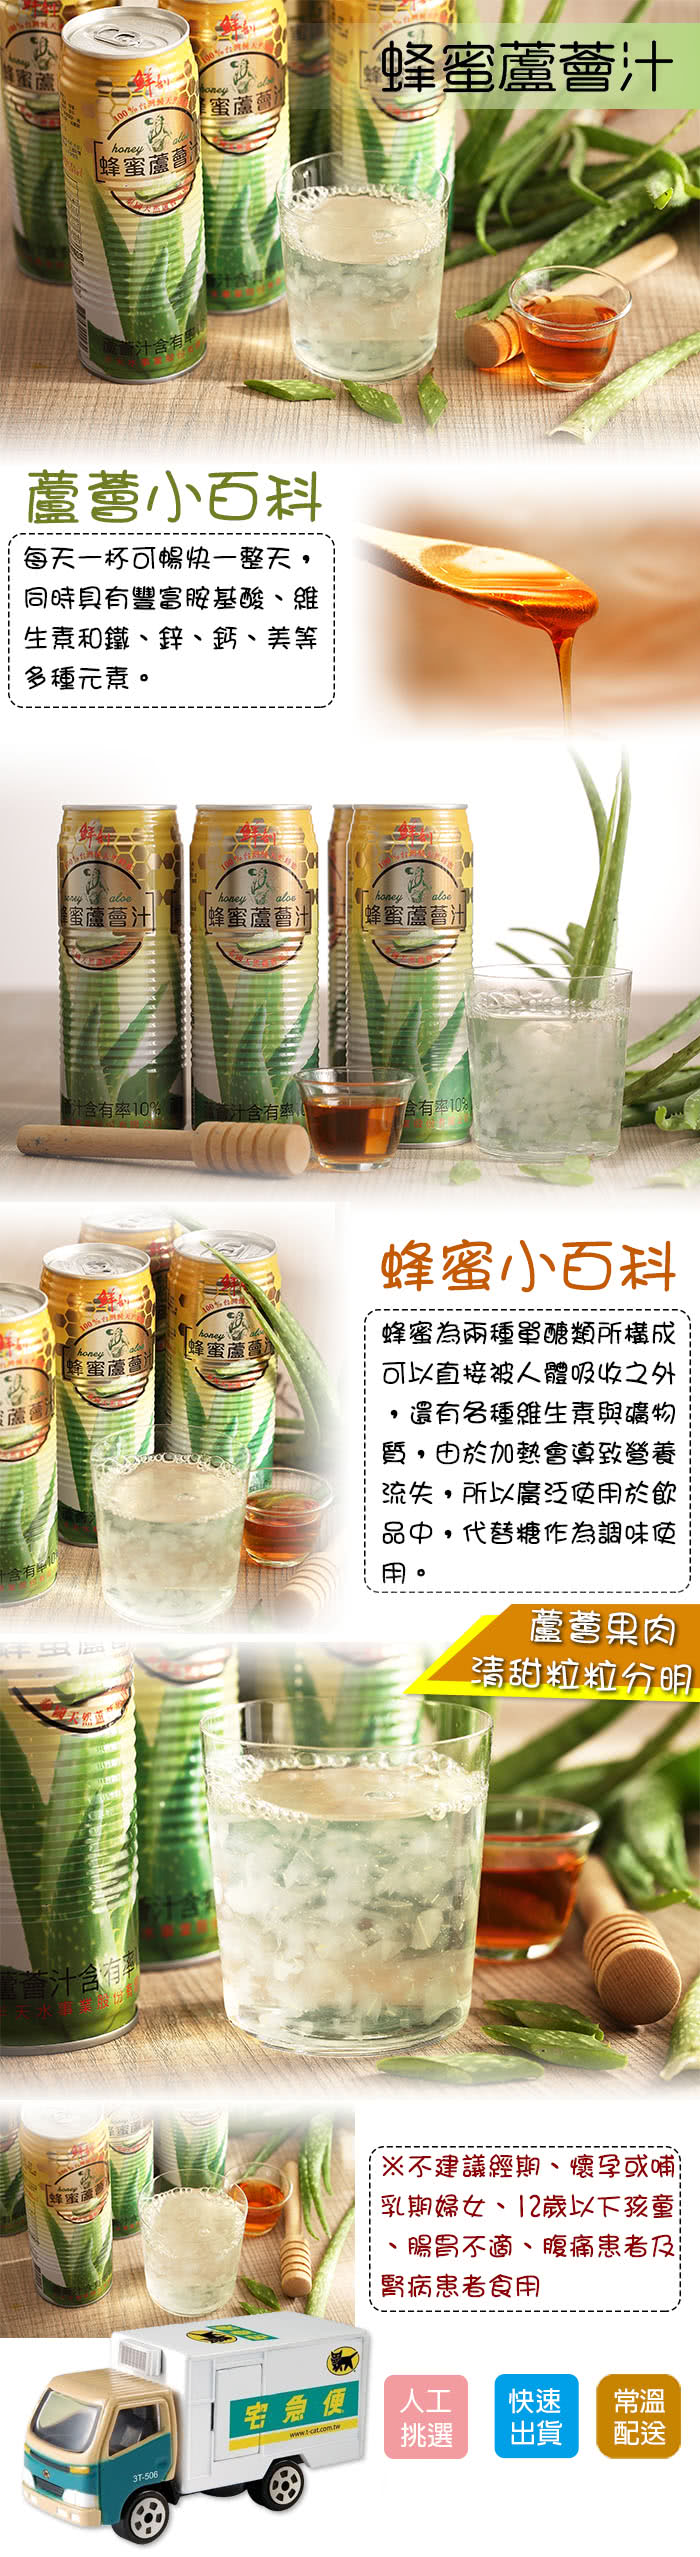 【半天水】鮮剖蜂蜜蘆薈汁520ml(24入/箱)